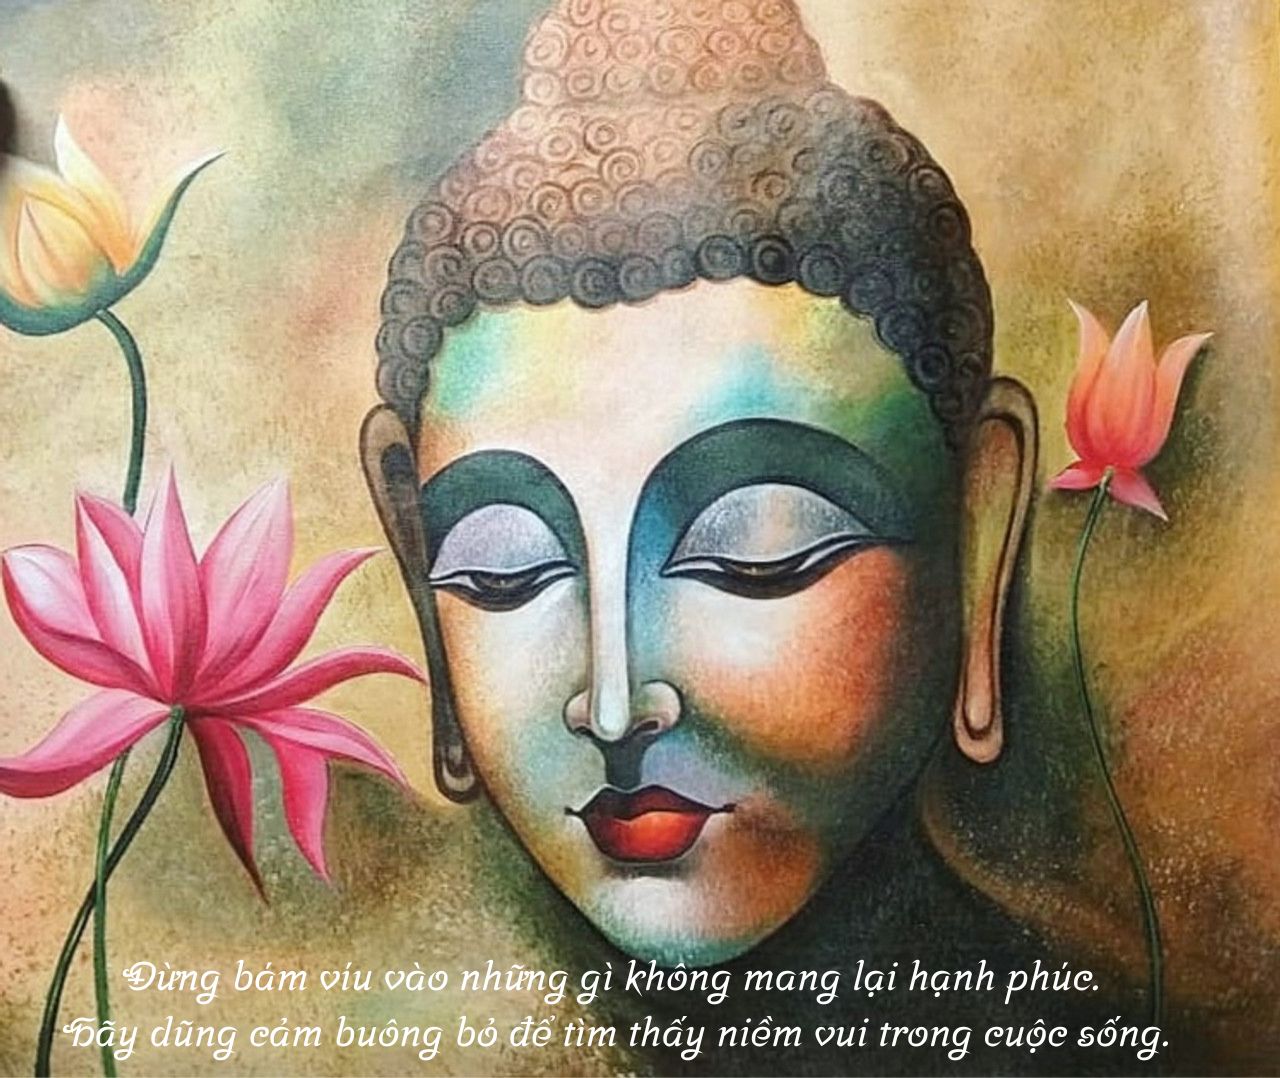 Lời Phật dạy về cách quên một người